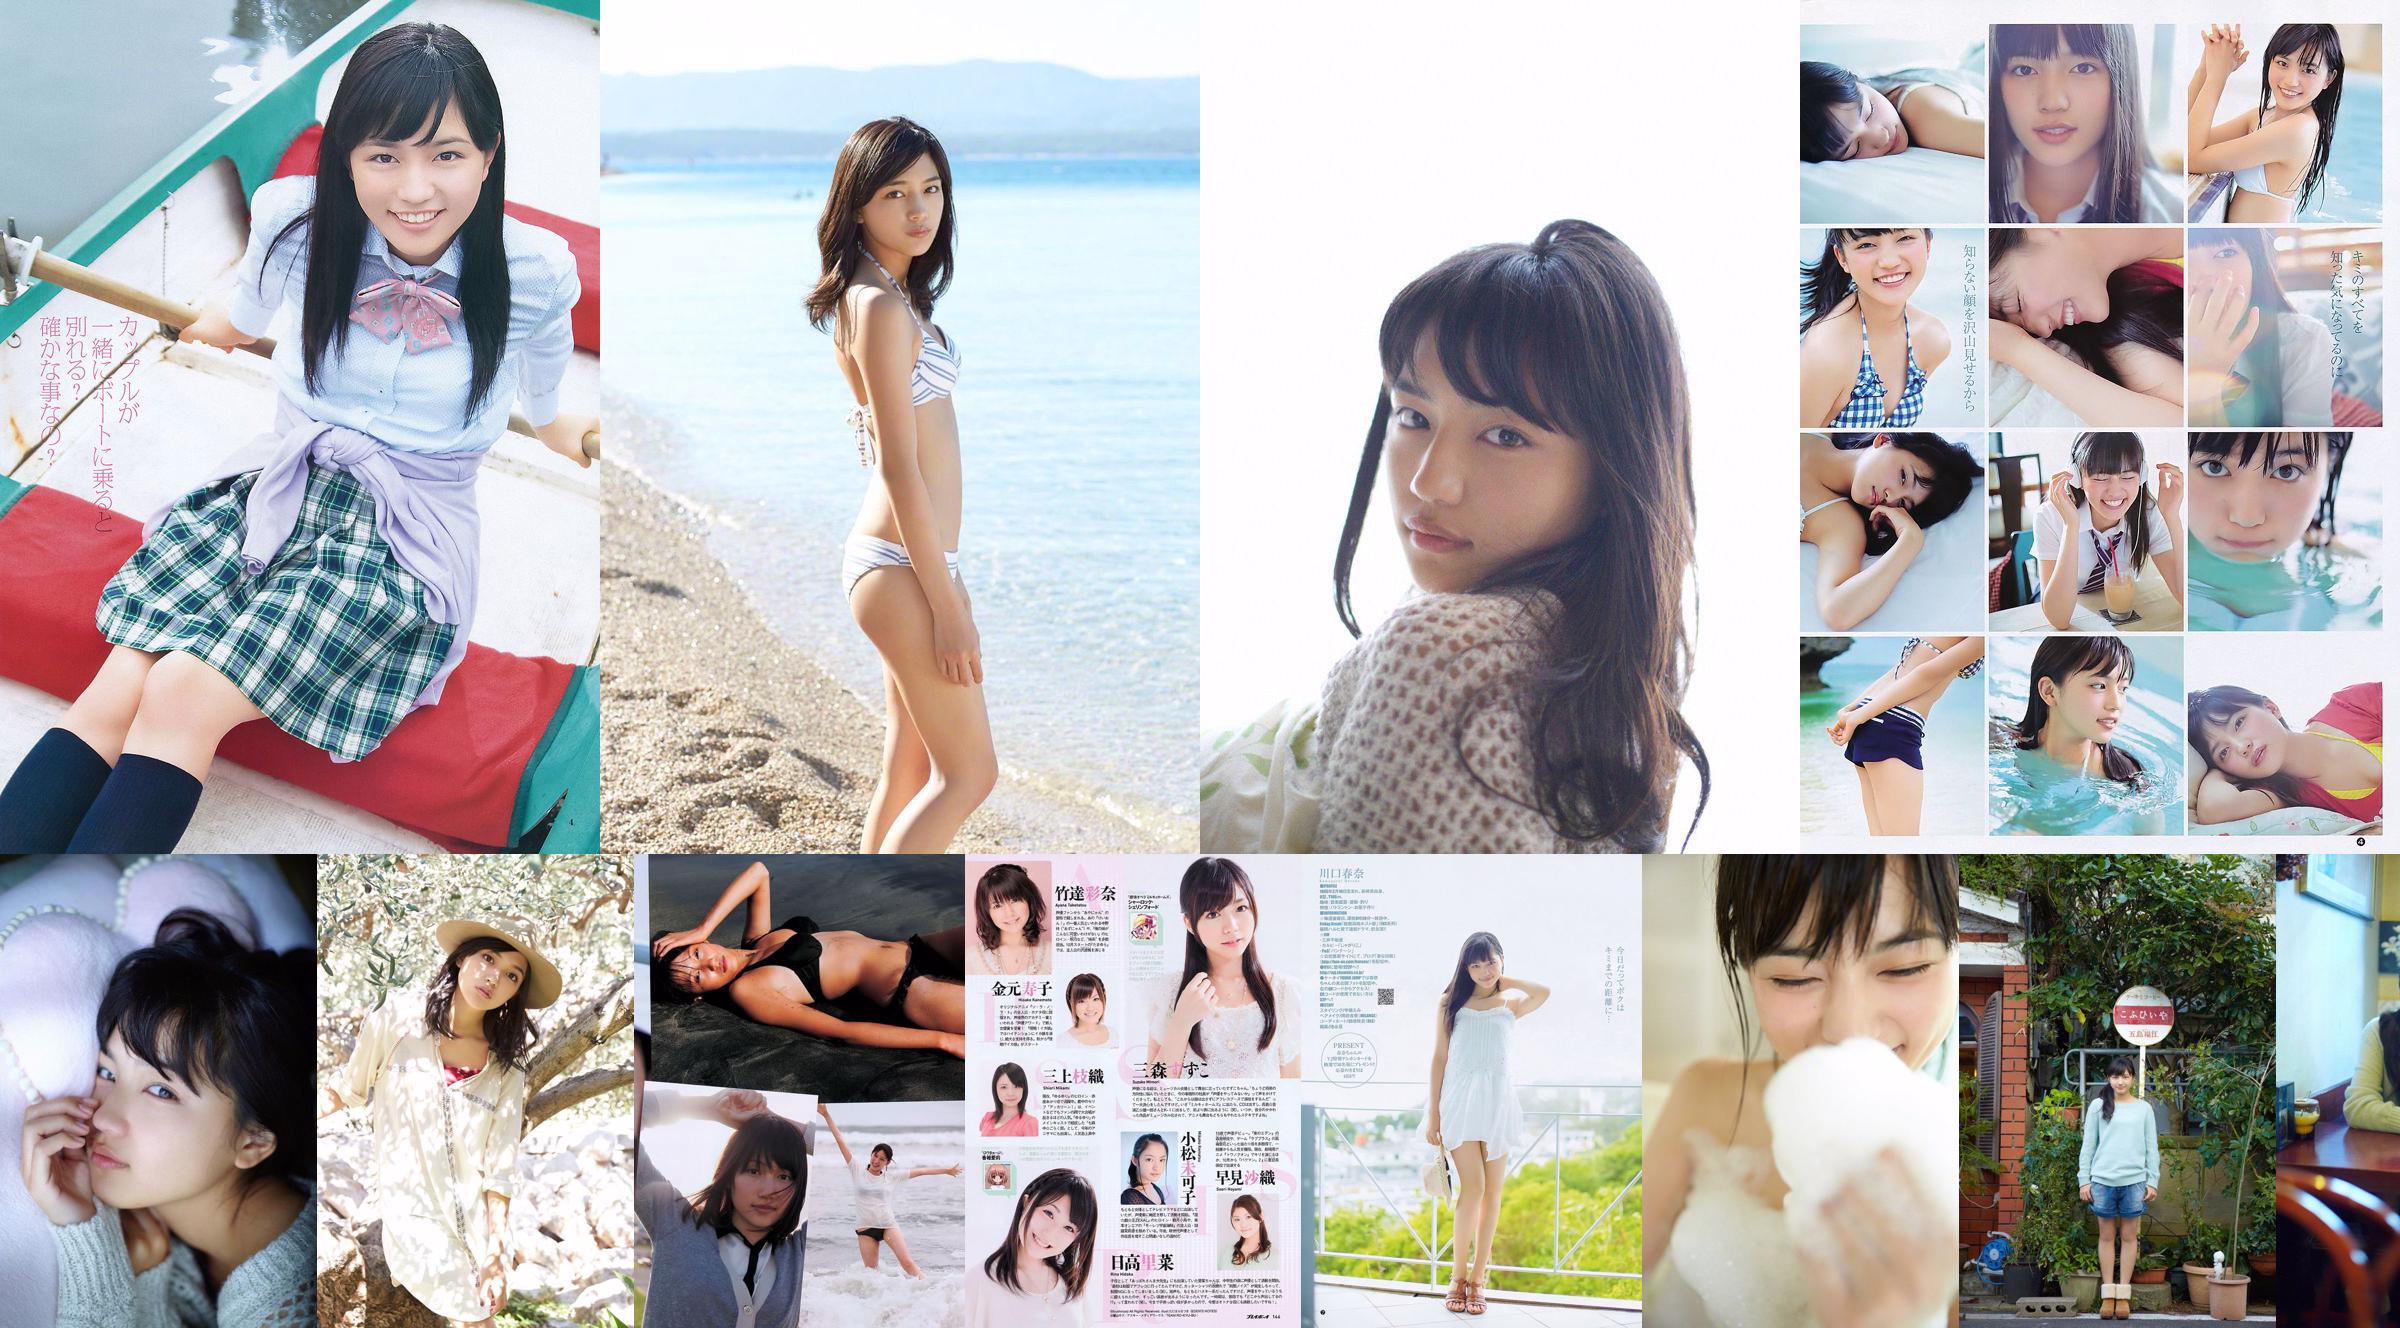 Haruna Kawaguchi Yumi Sugimoto [Salto settimanale per giovani] 2012 No.18 Fotografia No.eaddb2 Pagina 1